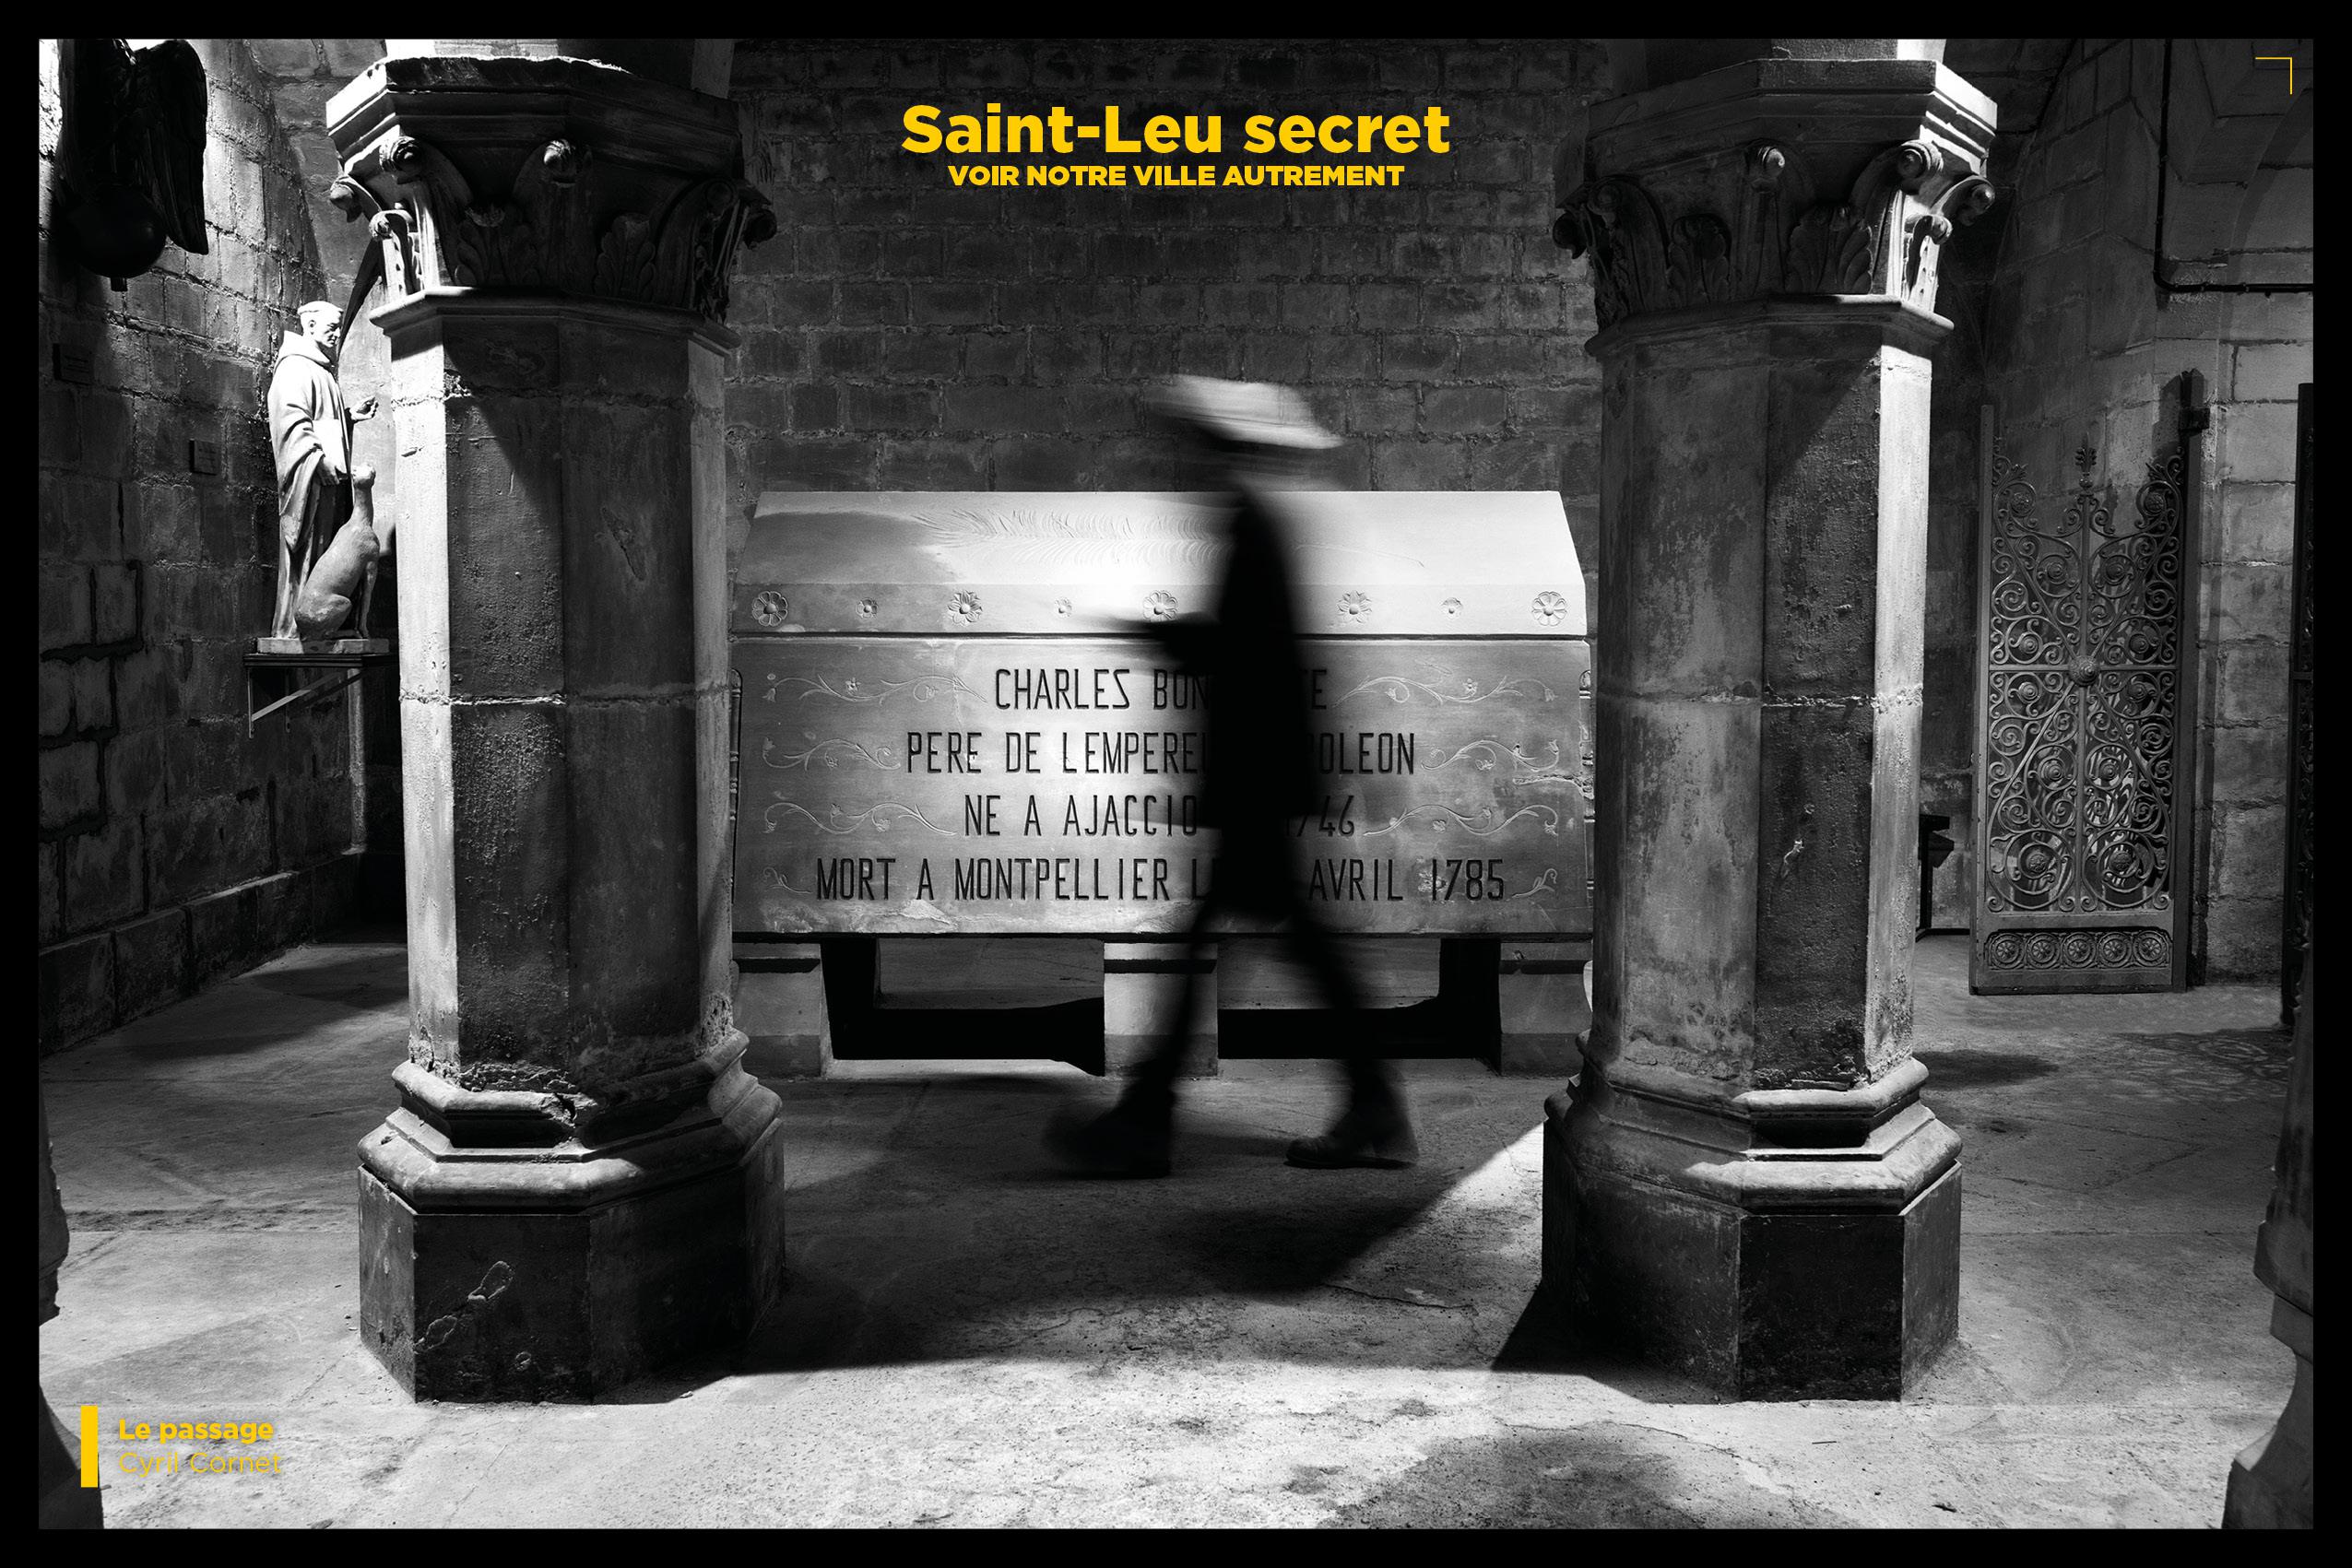 Expo_st-leu-secret30